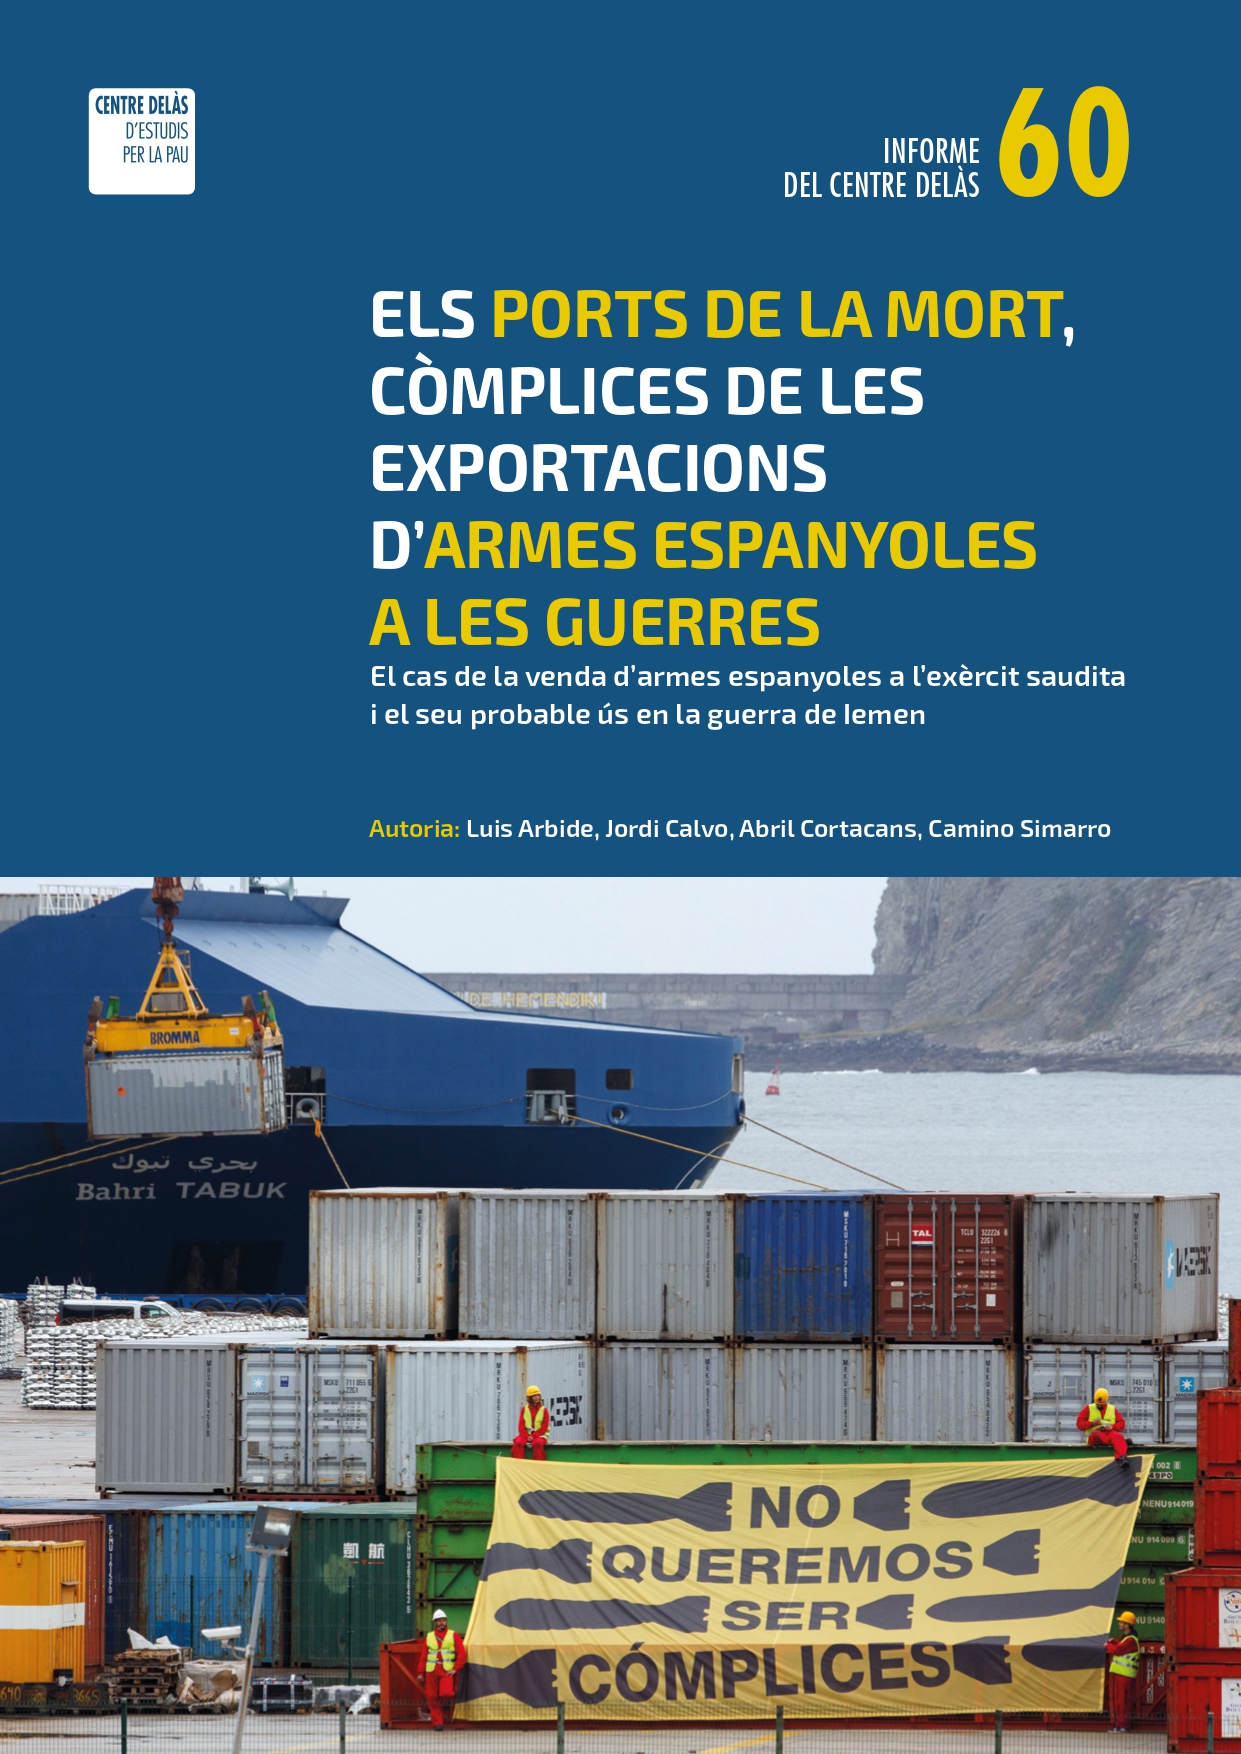 Informe 60: “Els ports de la mort, còmplices de les exportacions d’armes espanyoles per a la guerra. El cas de la venda d’armes espanyoles a l’exèrcit saudita i el seu probable ús a la guerra del Iemen”